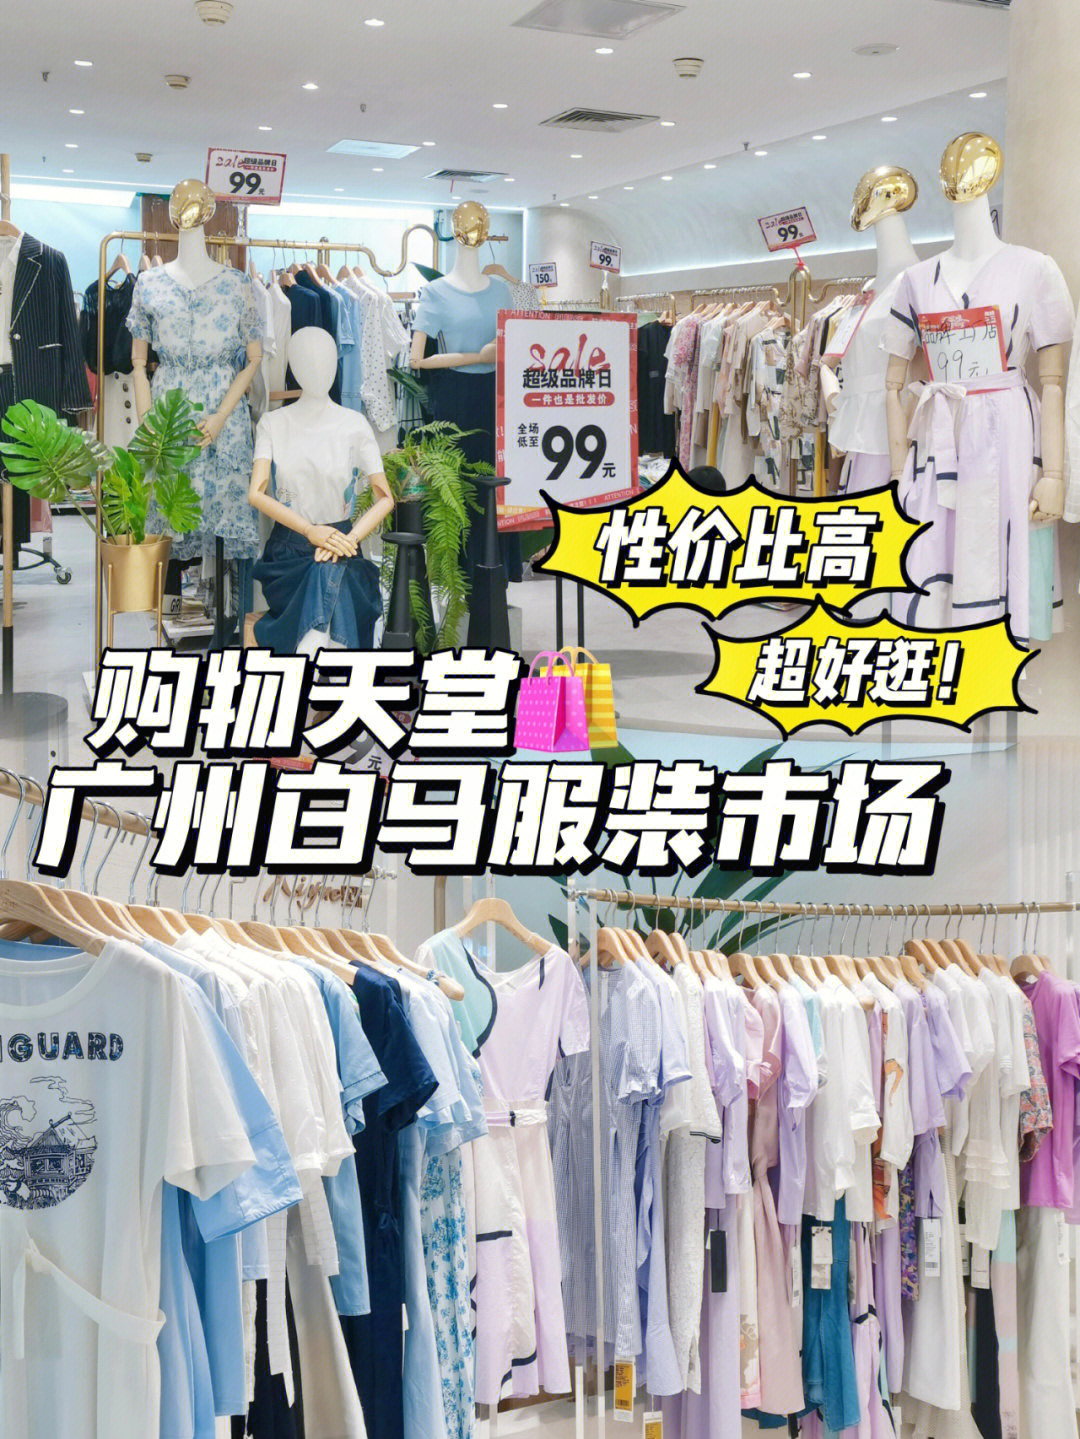 个我买衣服的宝藏地方广州白马服装市场9490批发的价格就能入手商